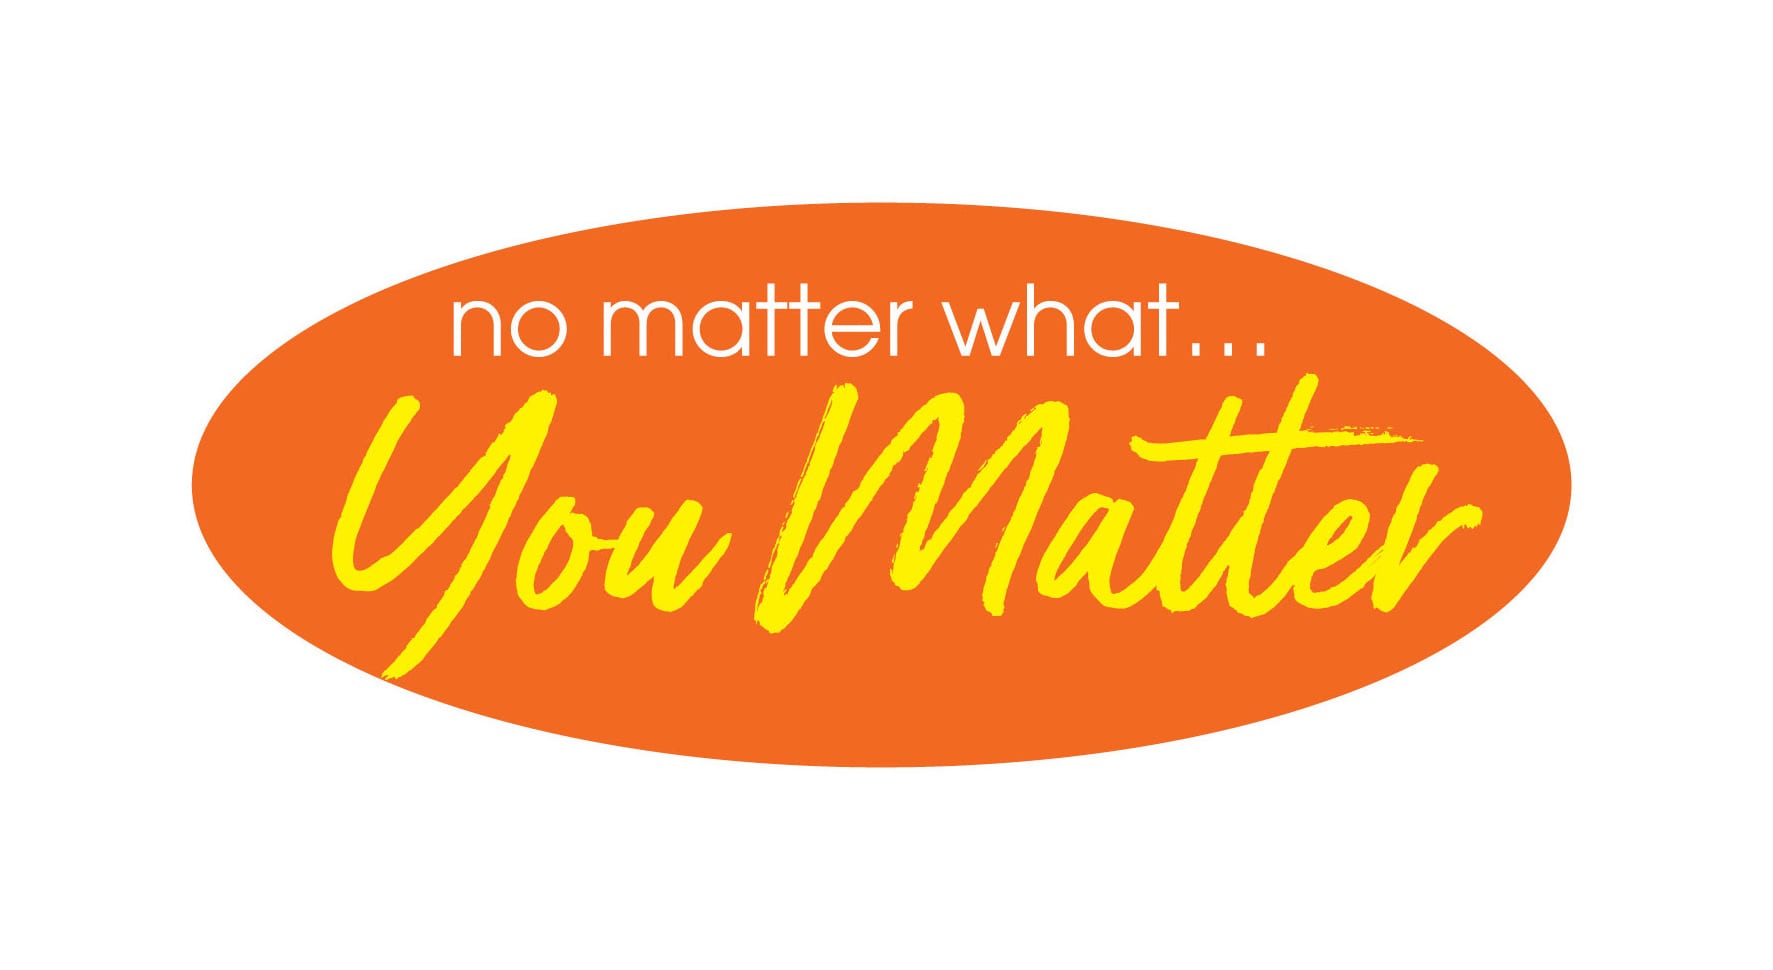 No matter what... you matter